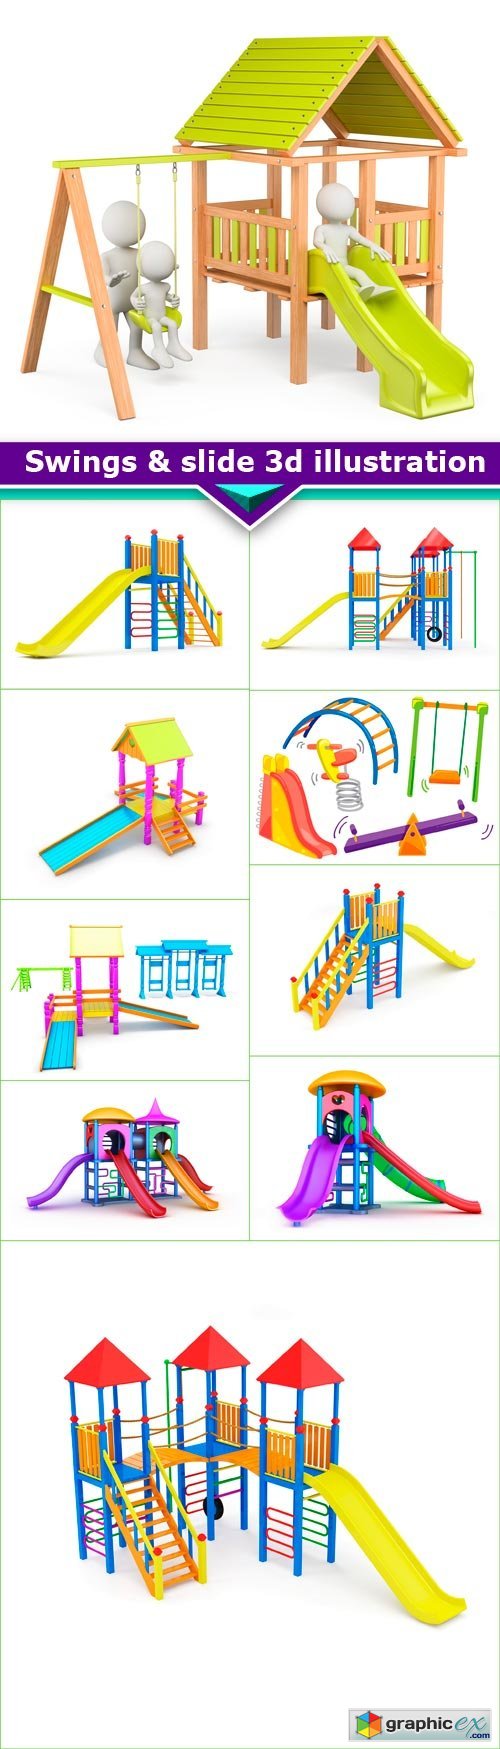 Swings & slide 3d illustration 10x JPEG